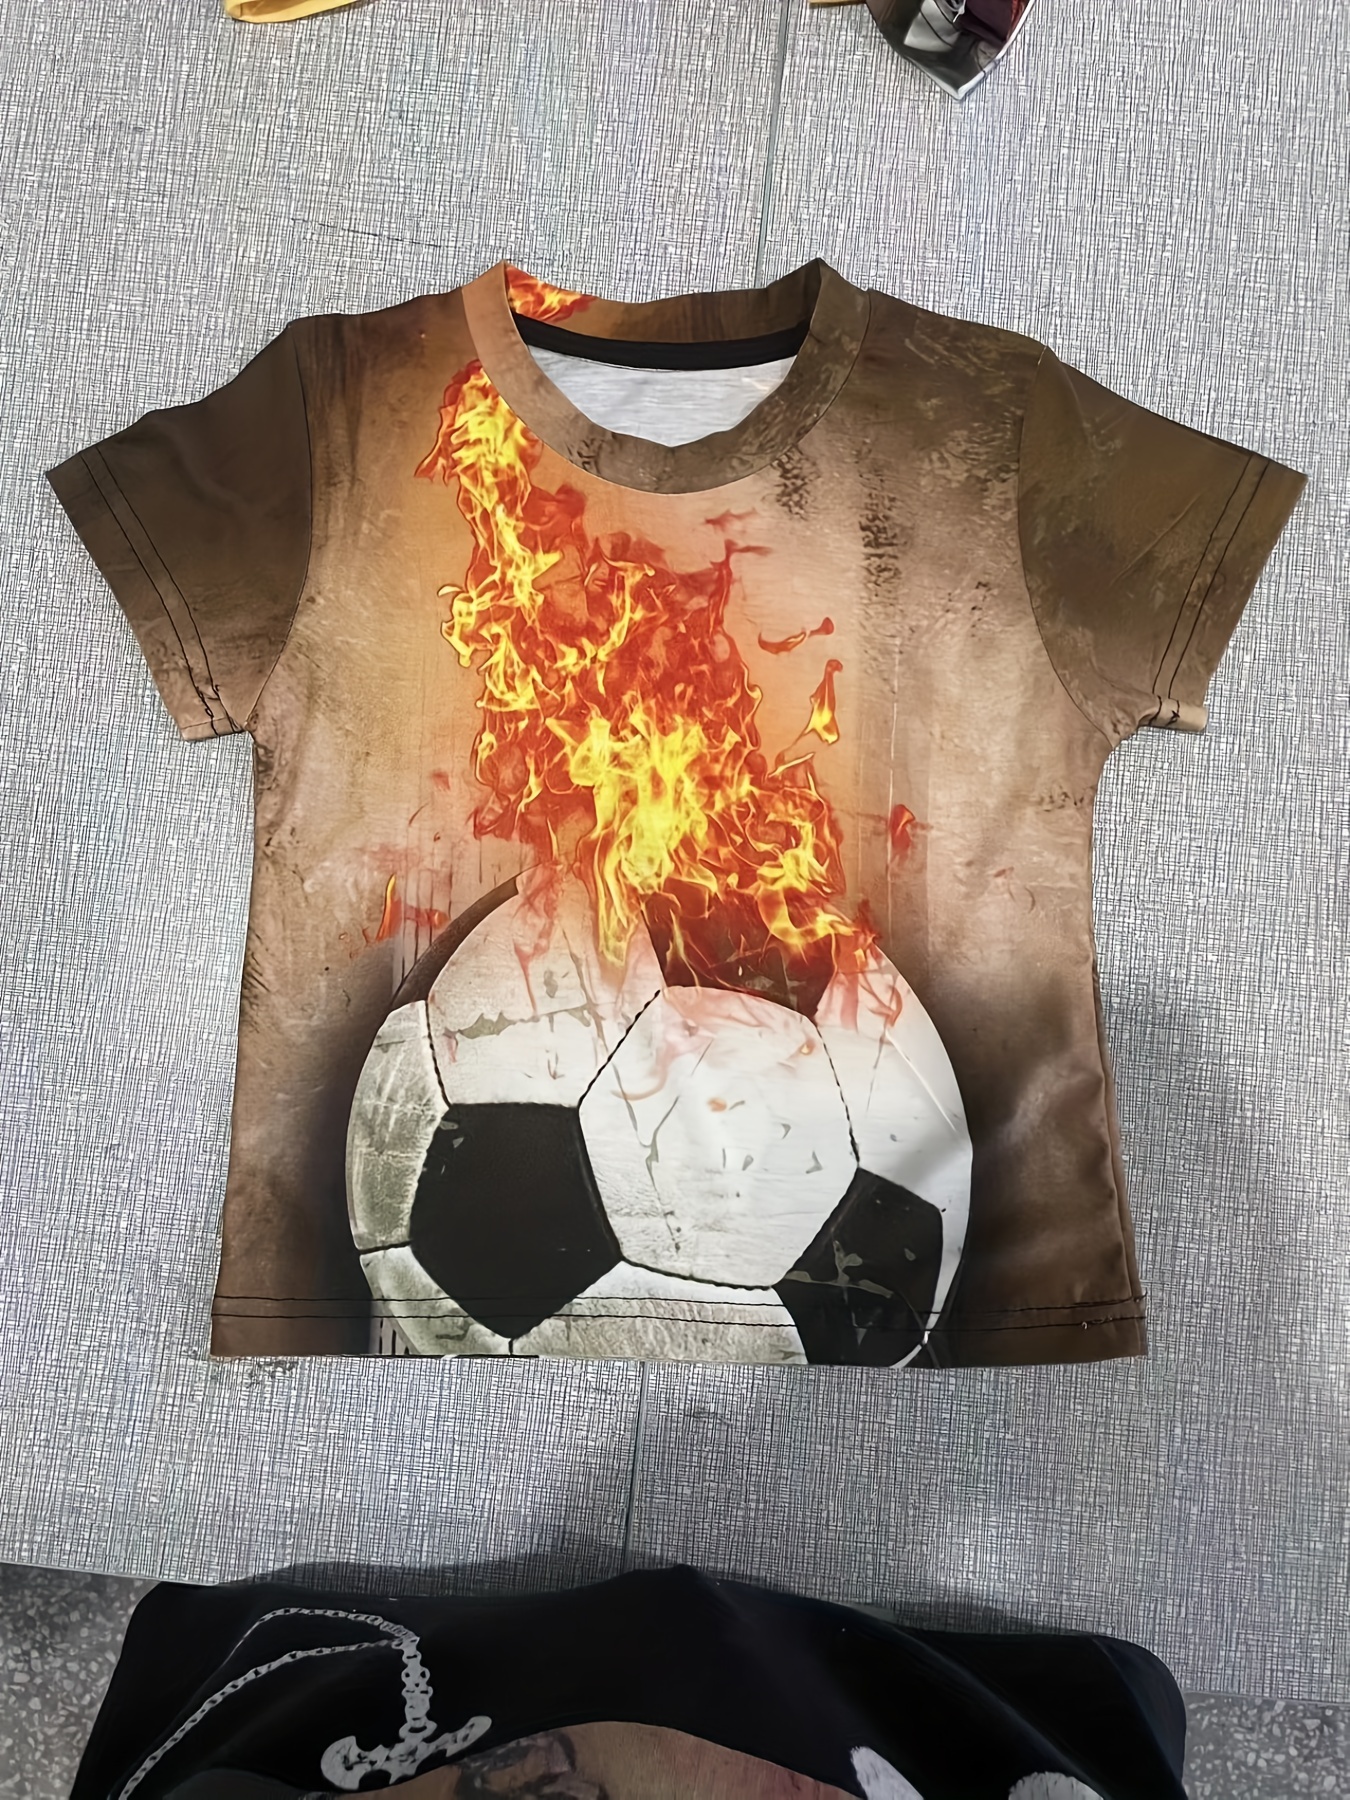 Fire Soccer Football 3D Print Summer Children's O-Neck T-shirt